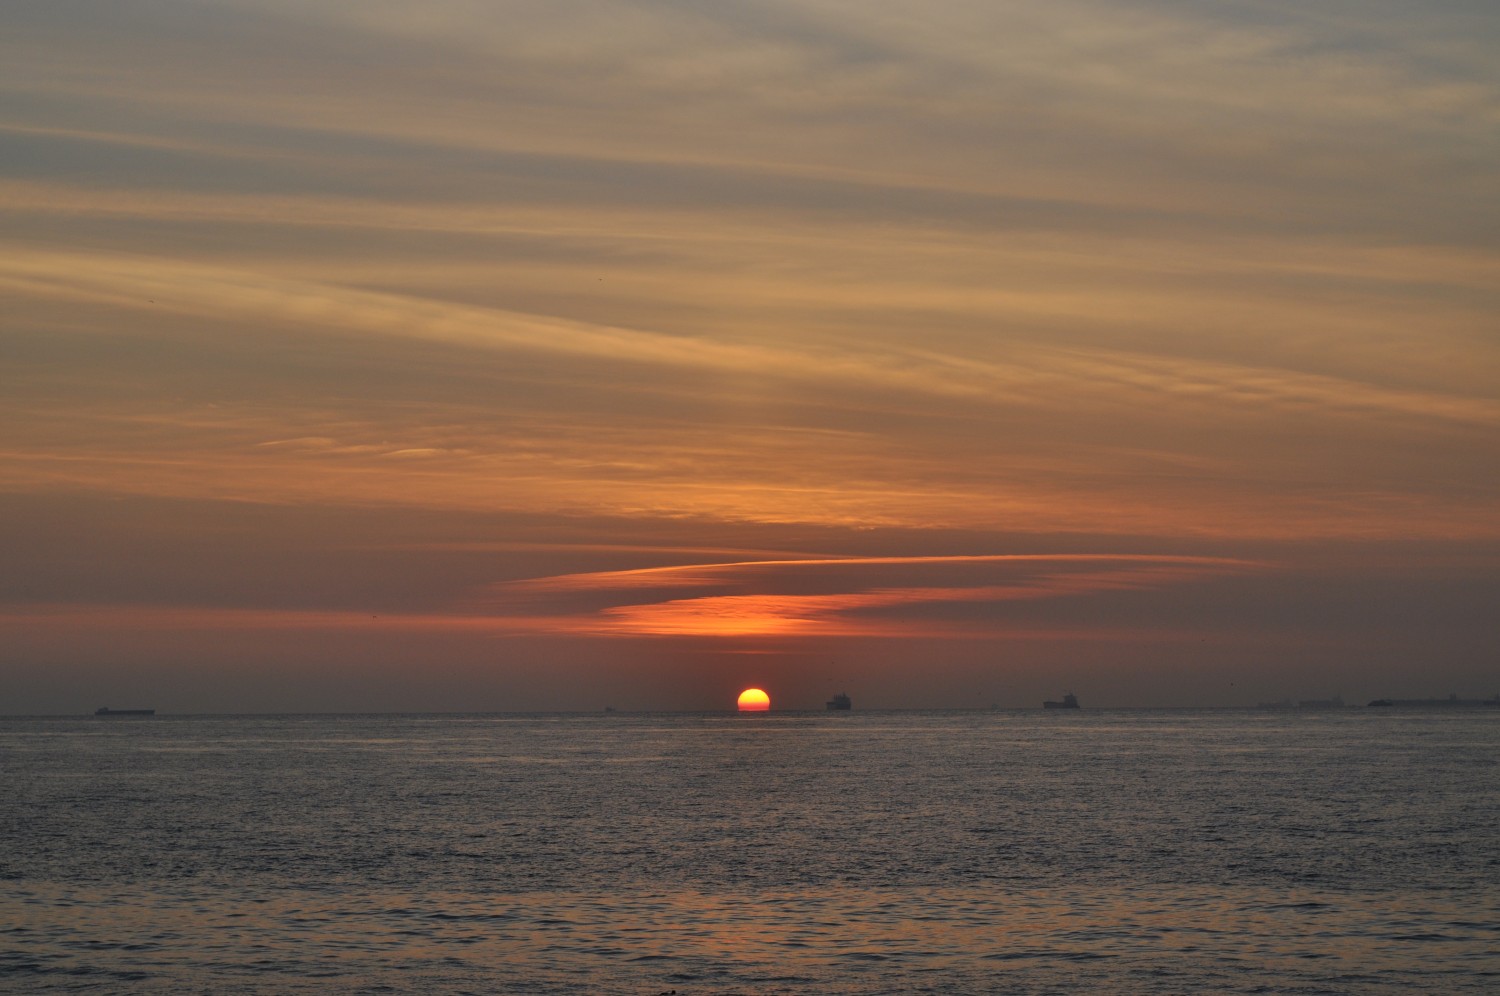 Sunset over the sea of Marmara